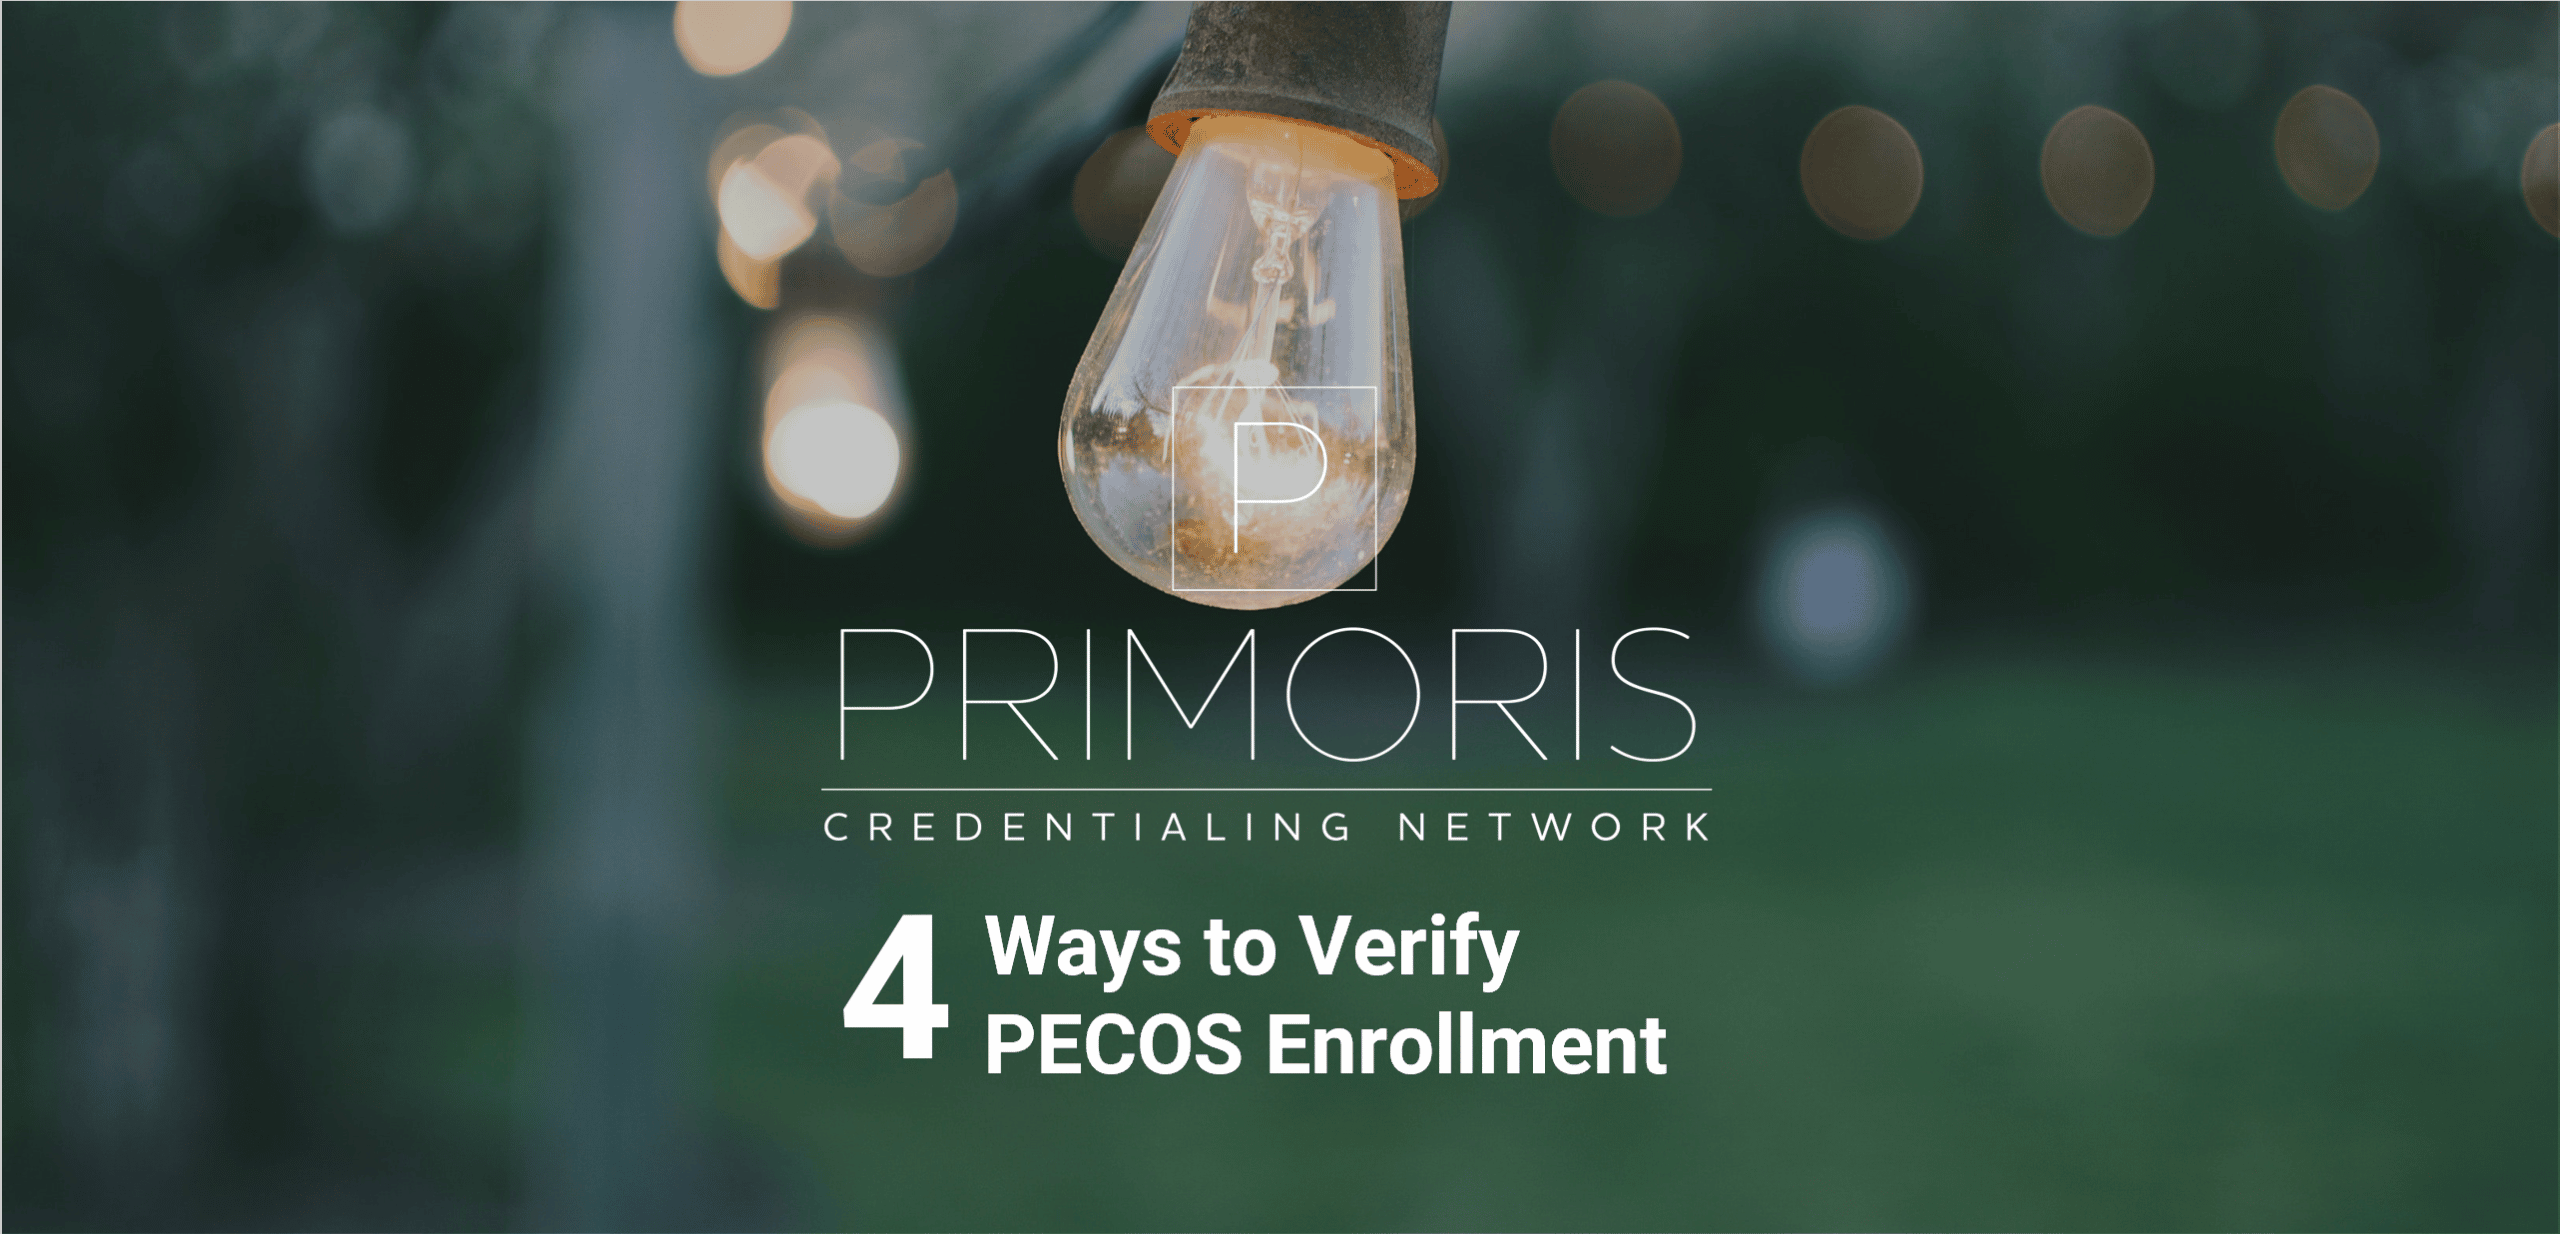 PECOS Enrollment Verification